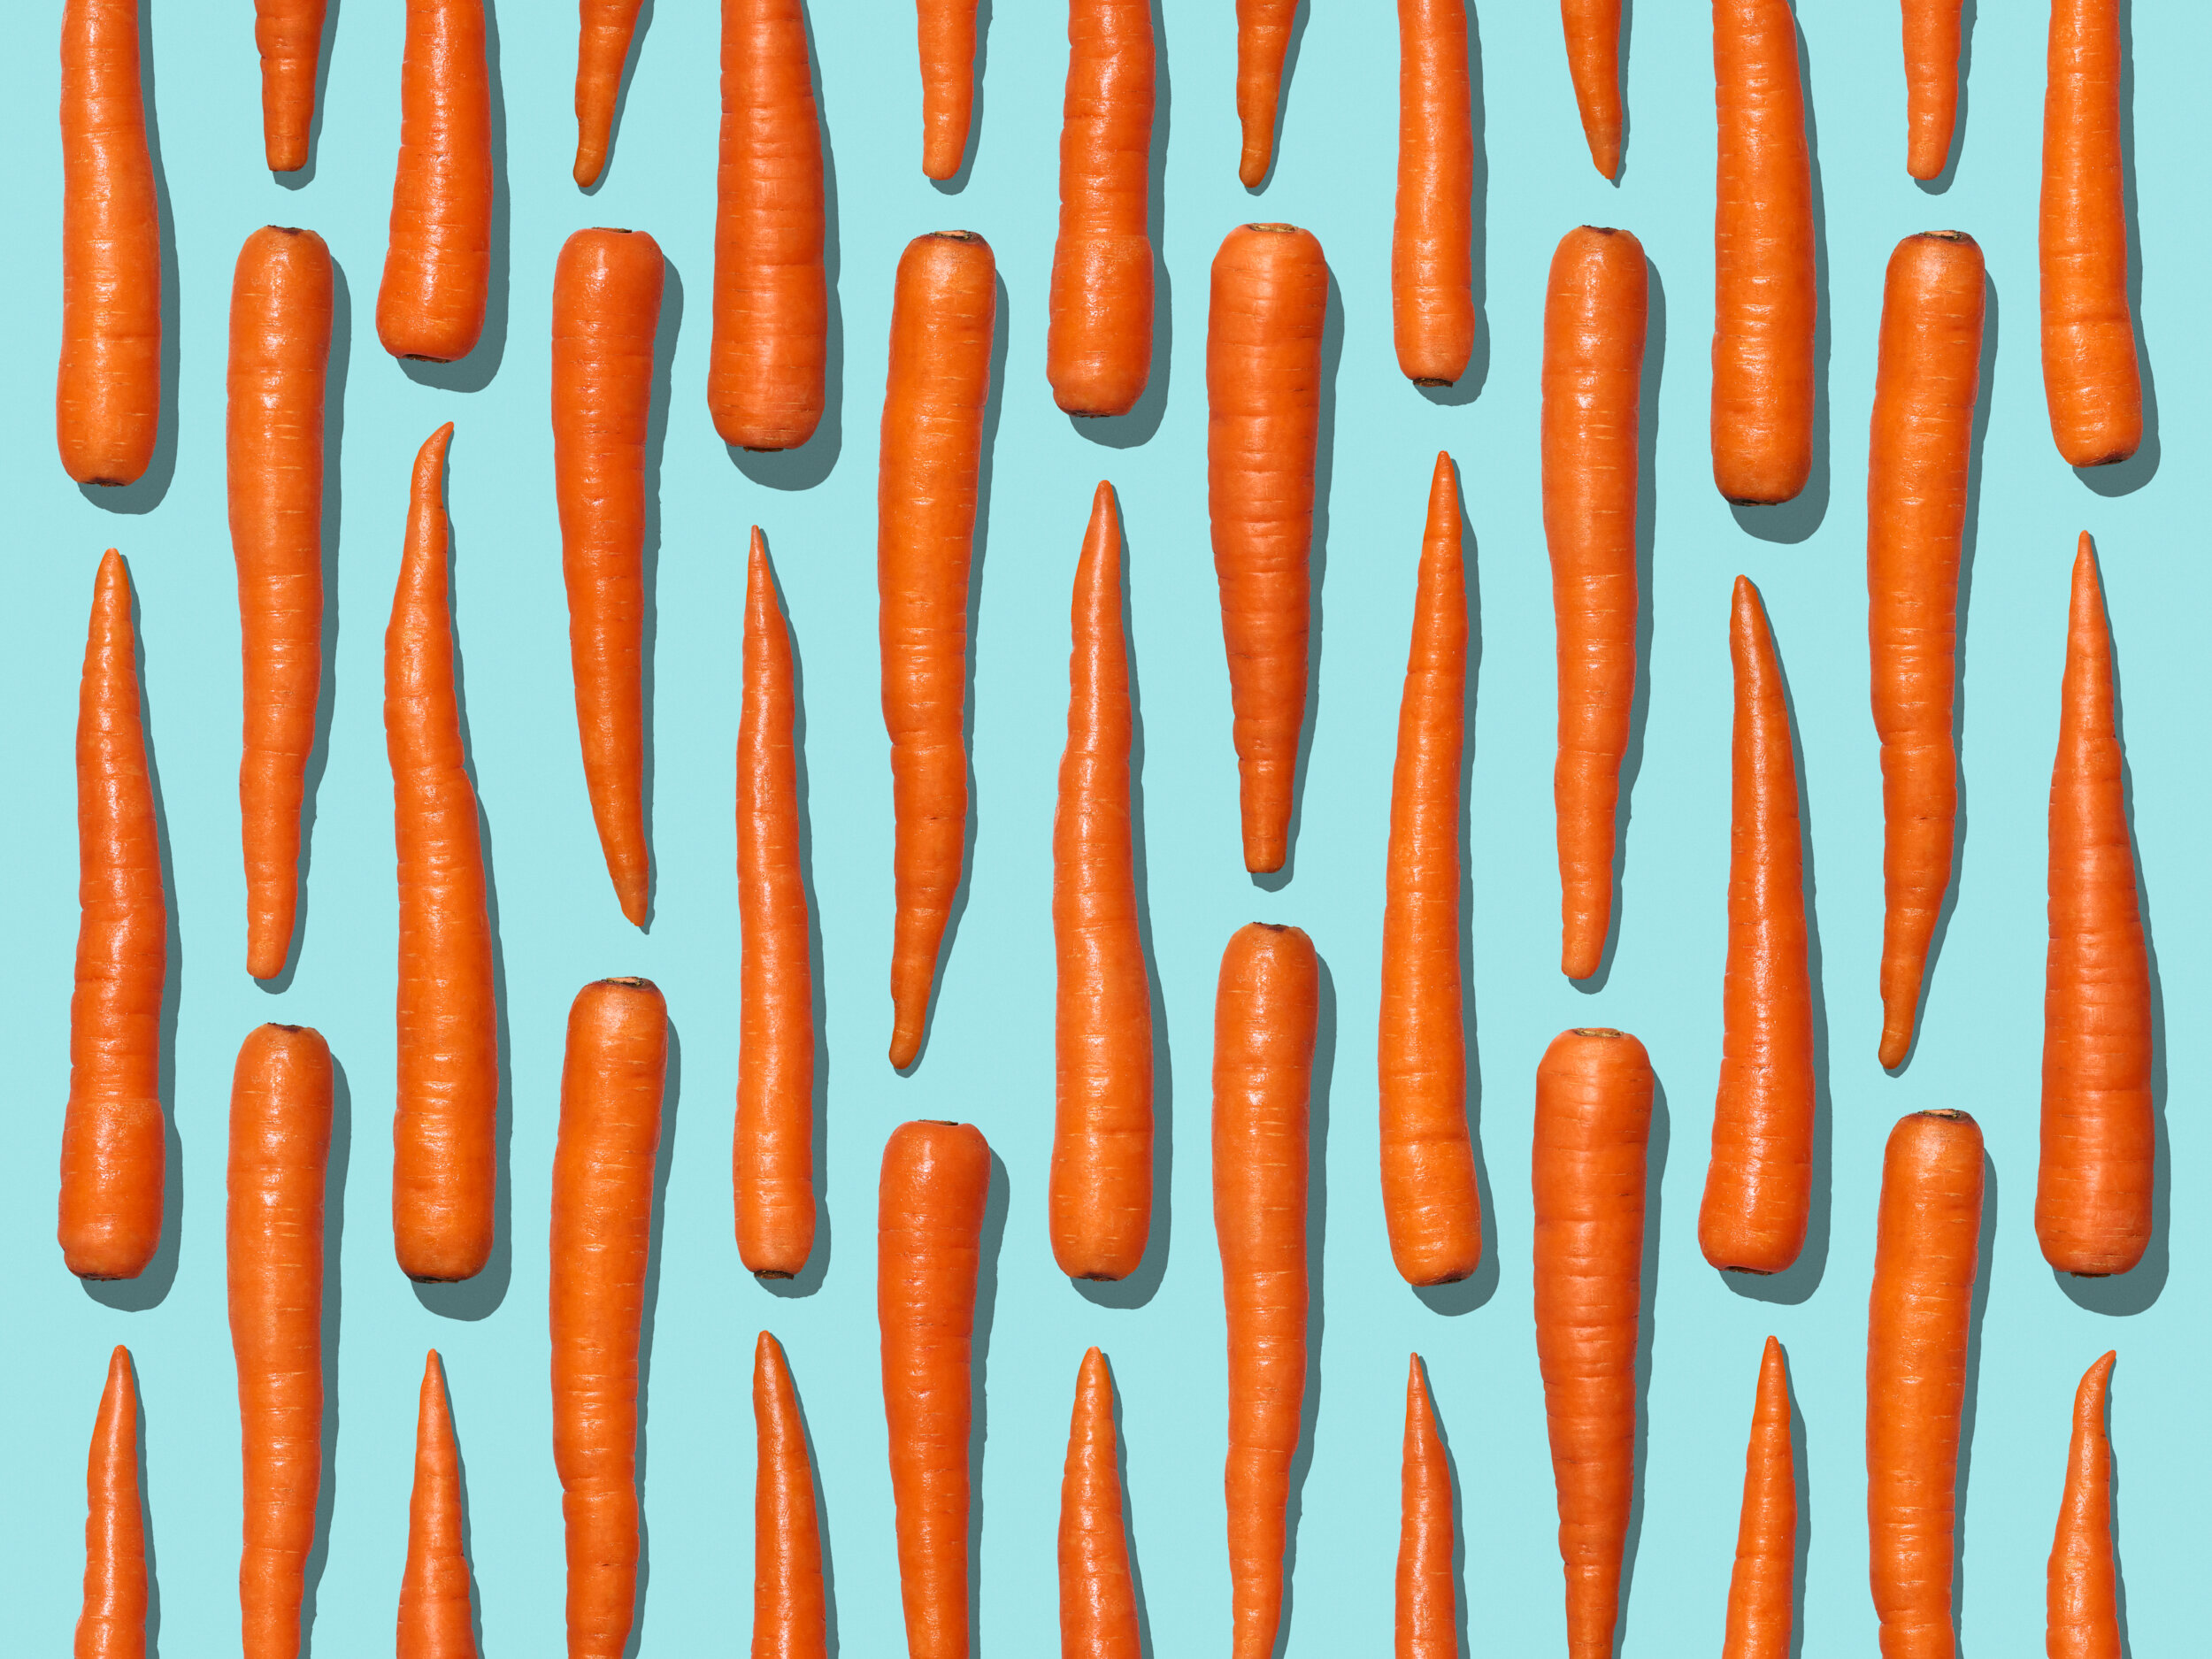 5-Cello-Carrots-0141-021021-C-R1-V1.jpg